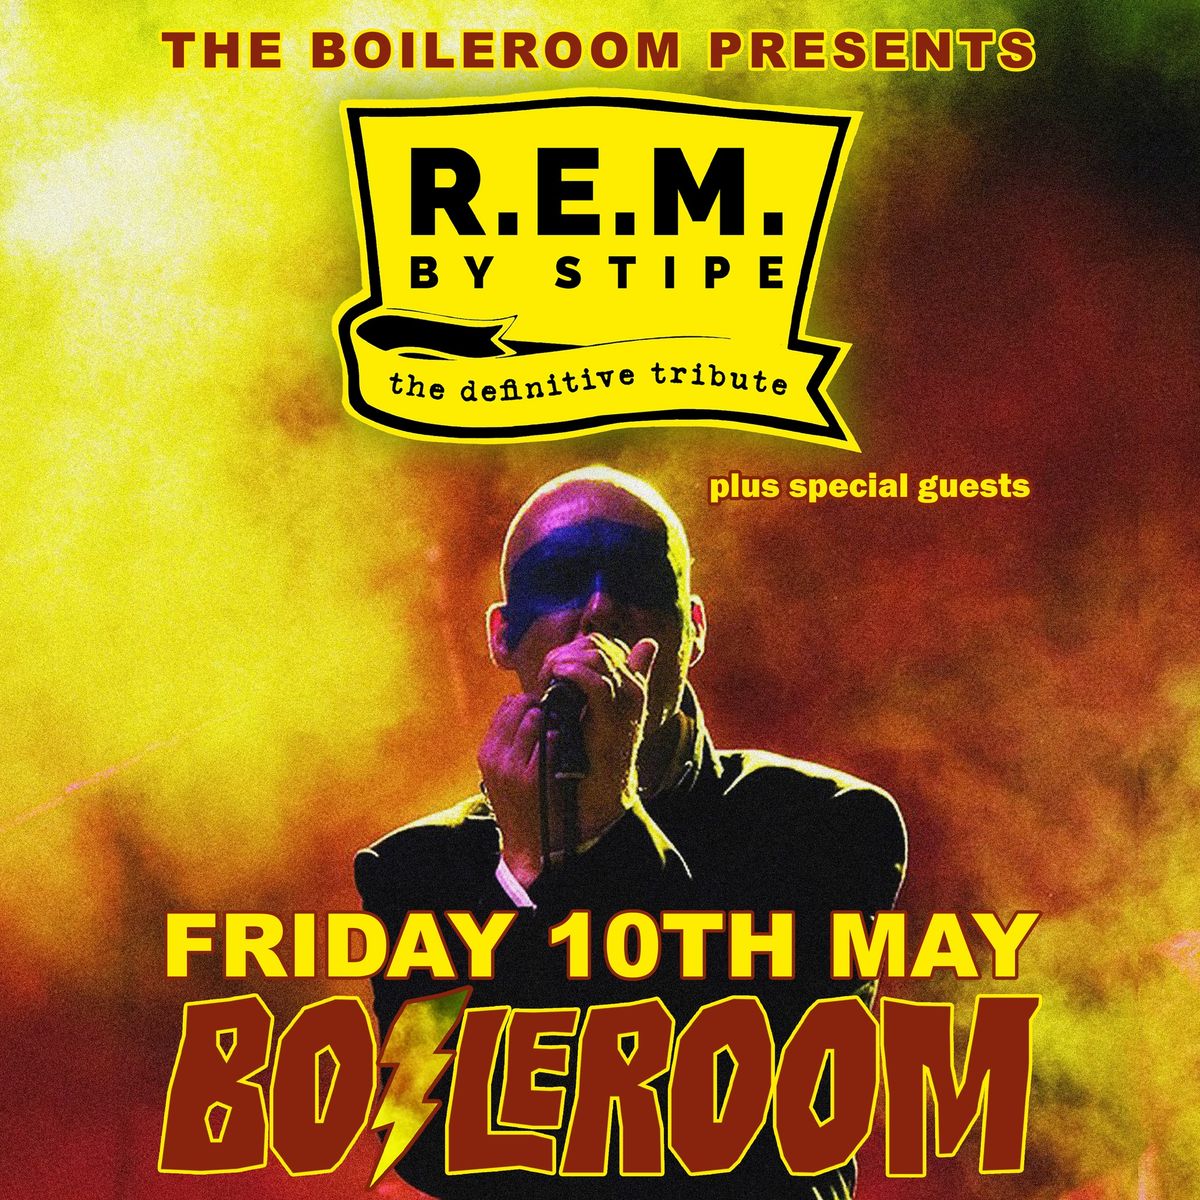 R.E.M. by Stipe - The Boileroom, Guildford